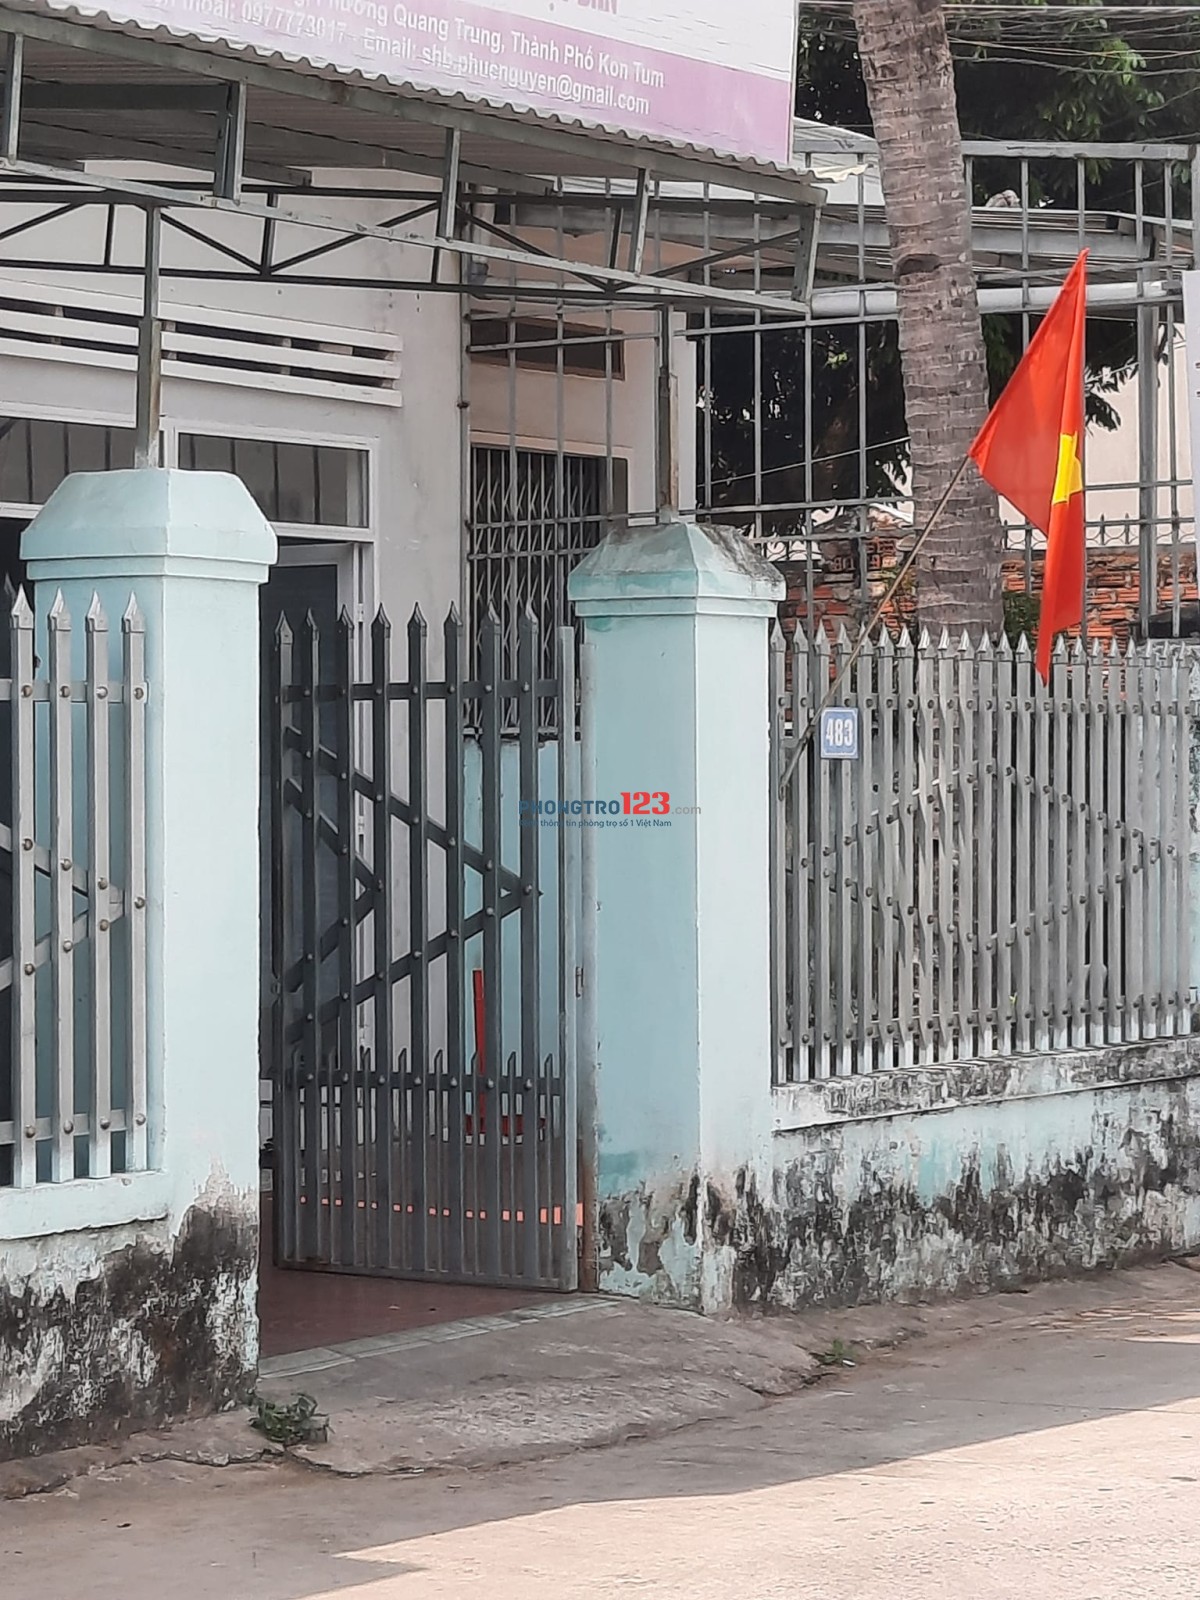 Cho thuê phòng trọ an ninh 483 Trần Nhân Tông, Quang Trung, Kon Tum gần bệnh viện tỉnh, Đại học Đà Nẵng